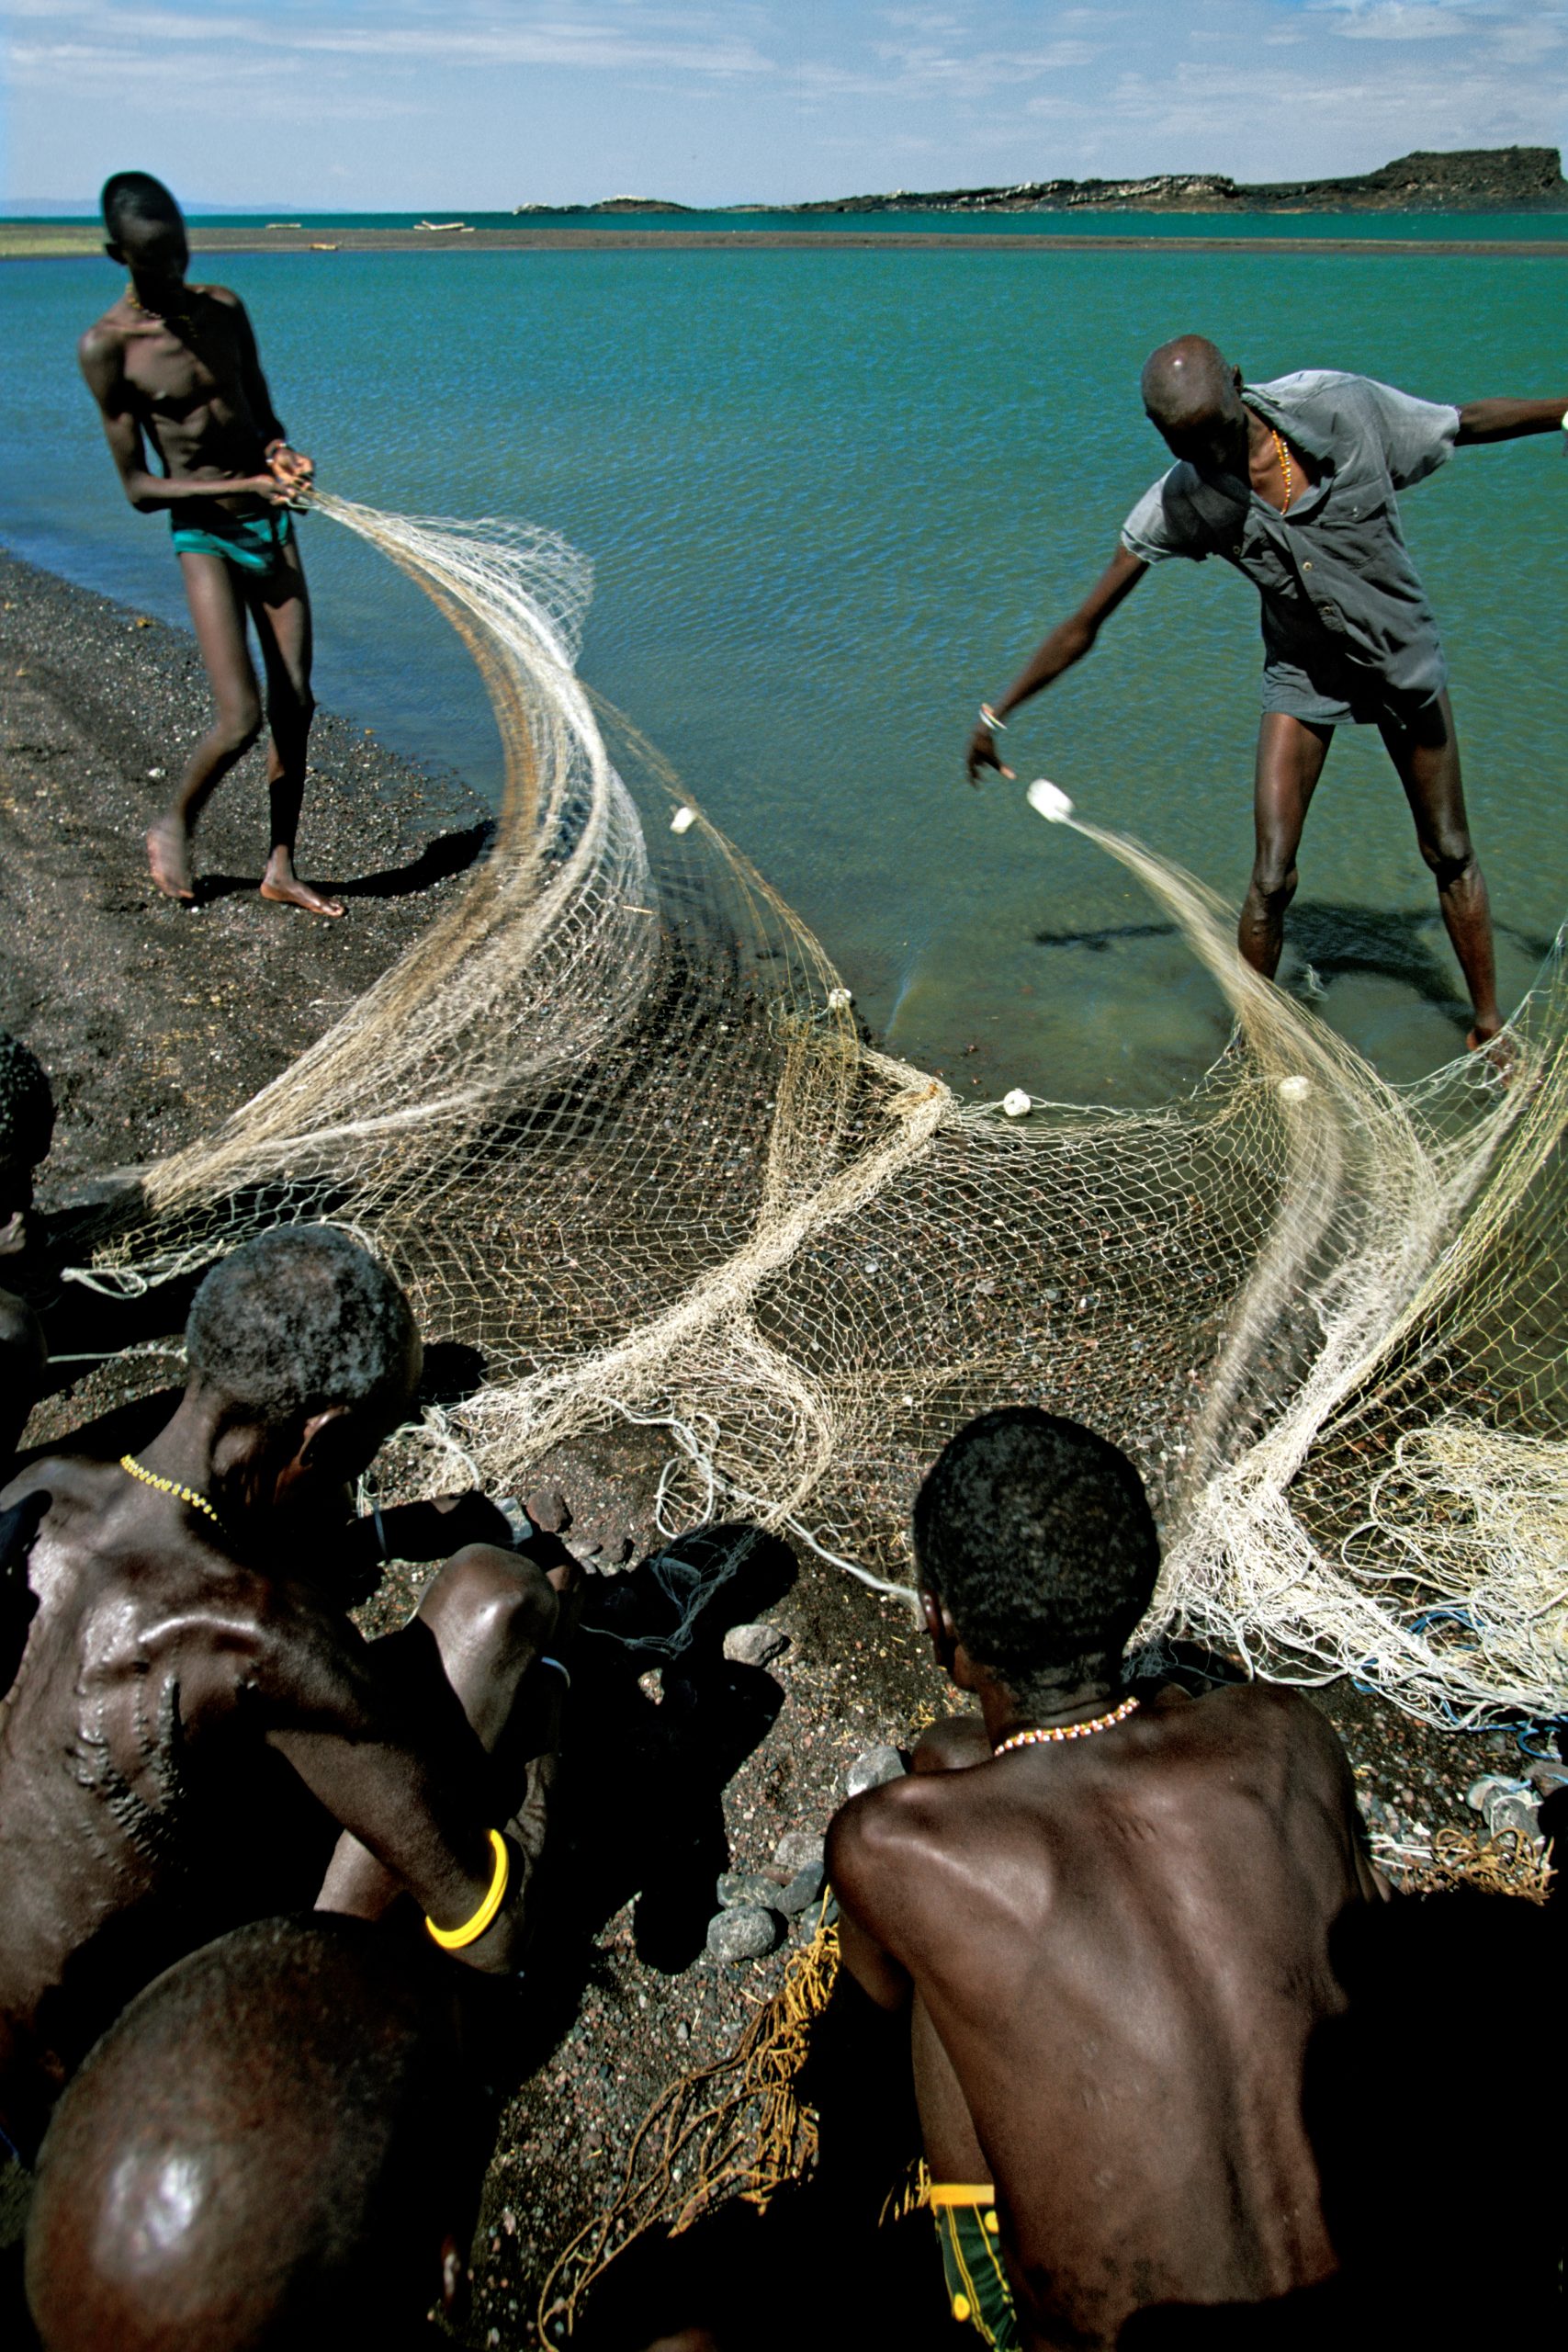 Rift Valley - Kenya - I pescatori di El Molo nel villaggio di Layeni posto in una zona di rocce vulcaniche sulle rive del lago Turkana, preparano le loro reti per la pesca.©Bruno Zanzottera